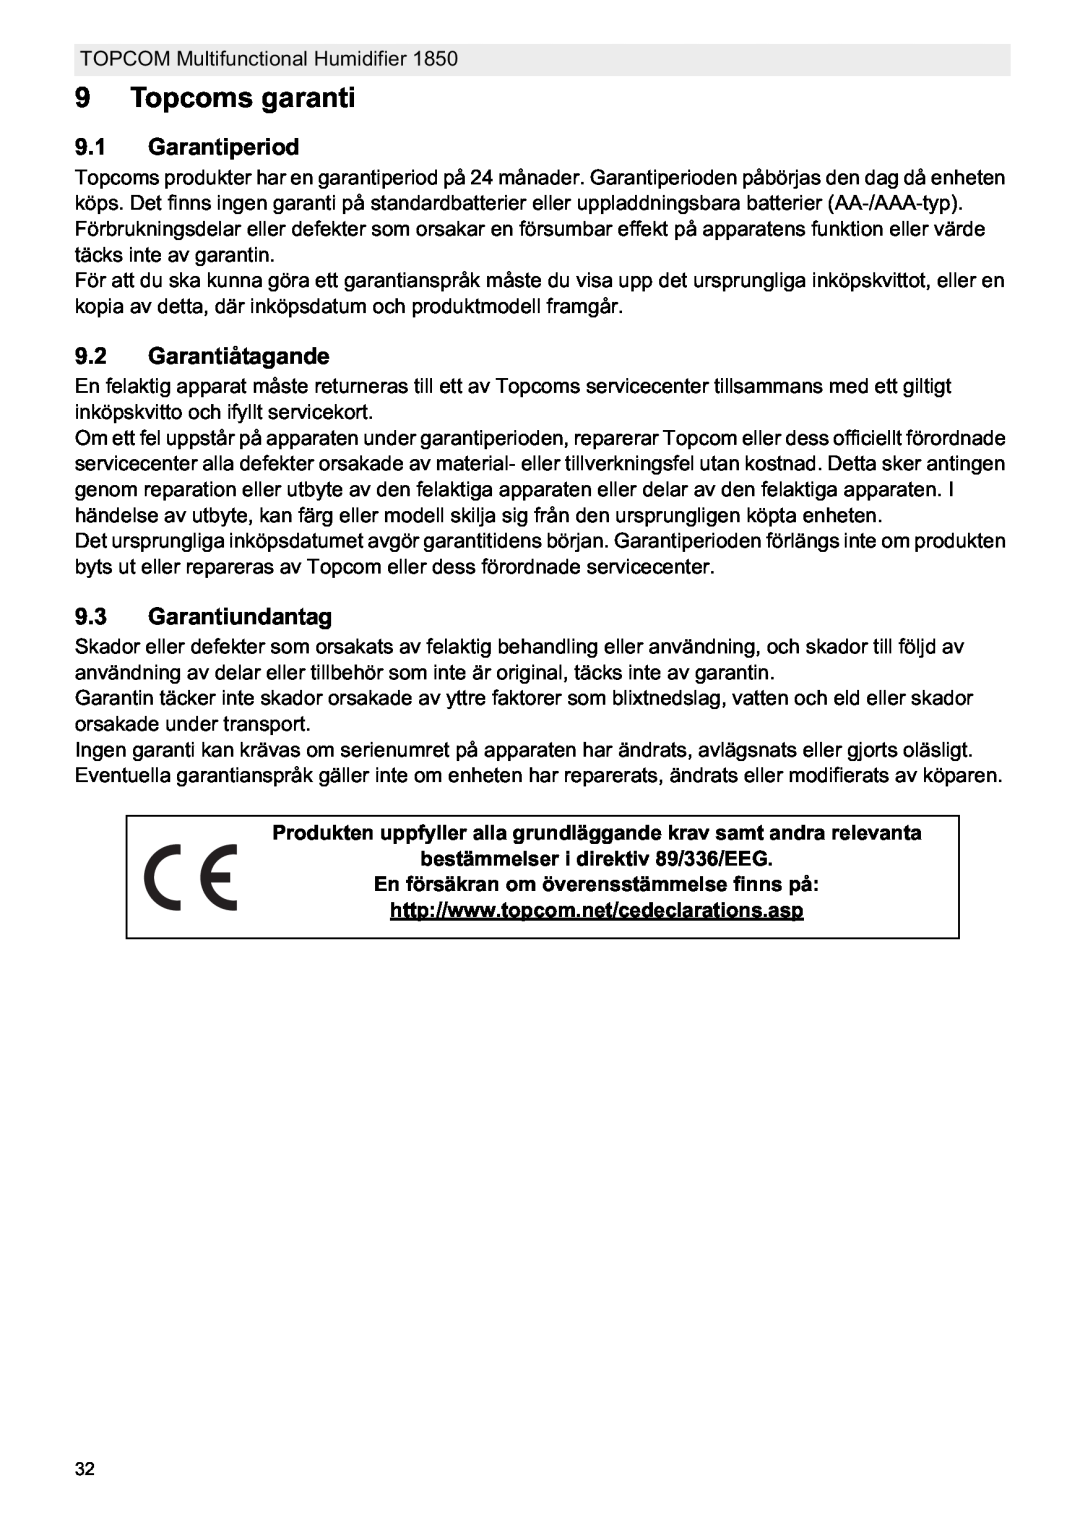 Topcom 1850 Topcoms garanti, Garantiperiod, Garantiåtagande, Garantiundantag, bestämmelser i direktiv 89/336/EEG 